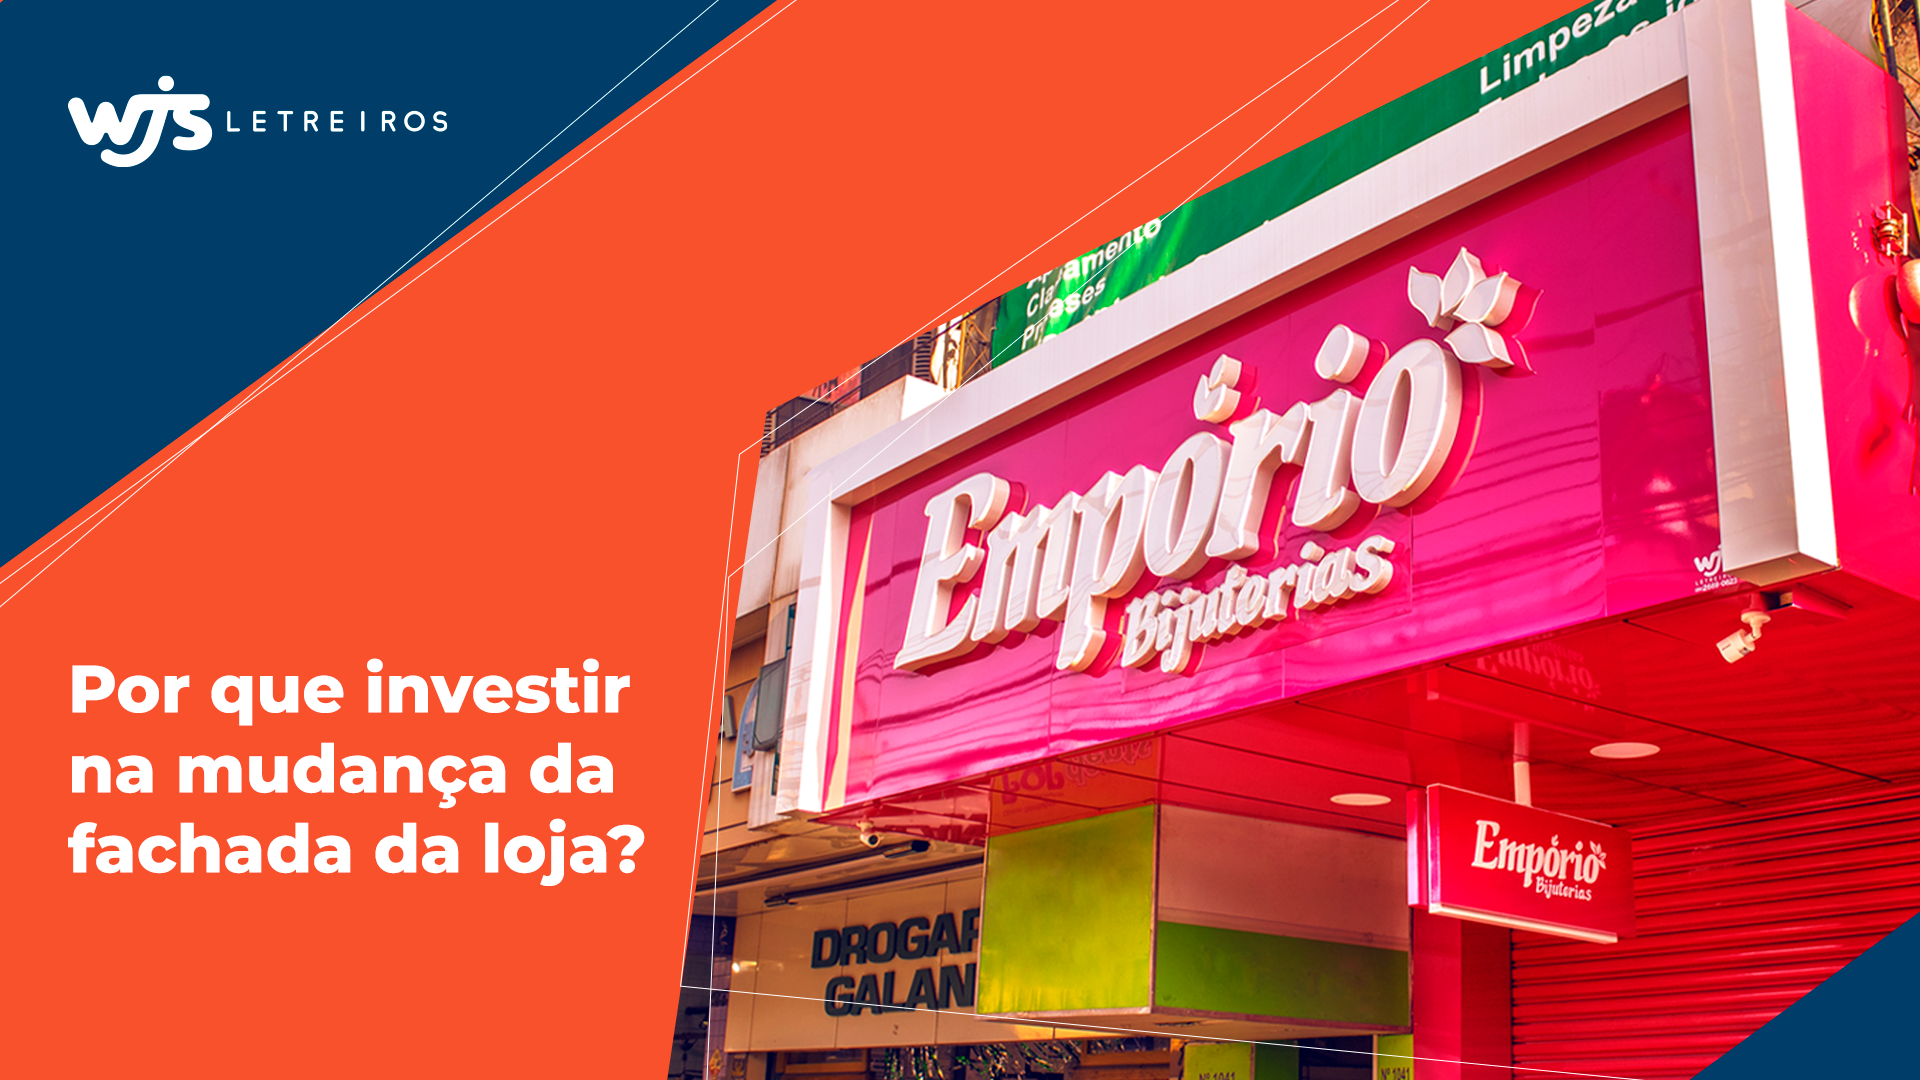 https://wjsletreiros.com.br/wp-content/uploads/2021/04/por-que-investir-na-mudanca-da-fachada-da-loja.png